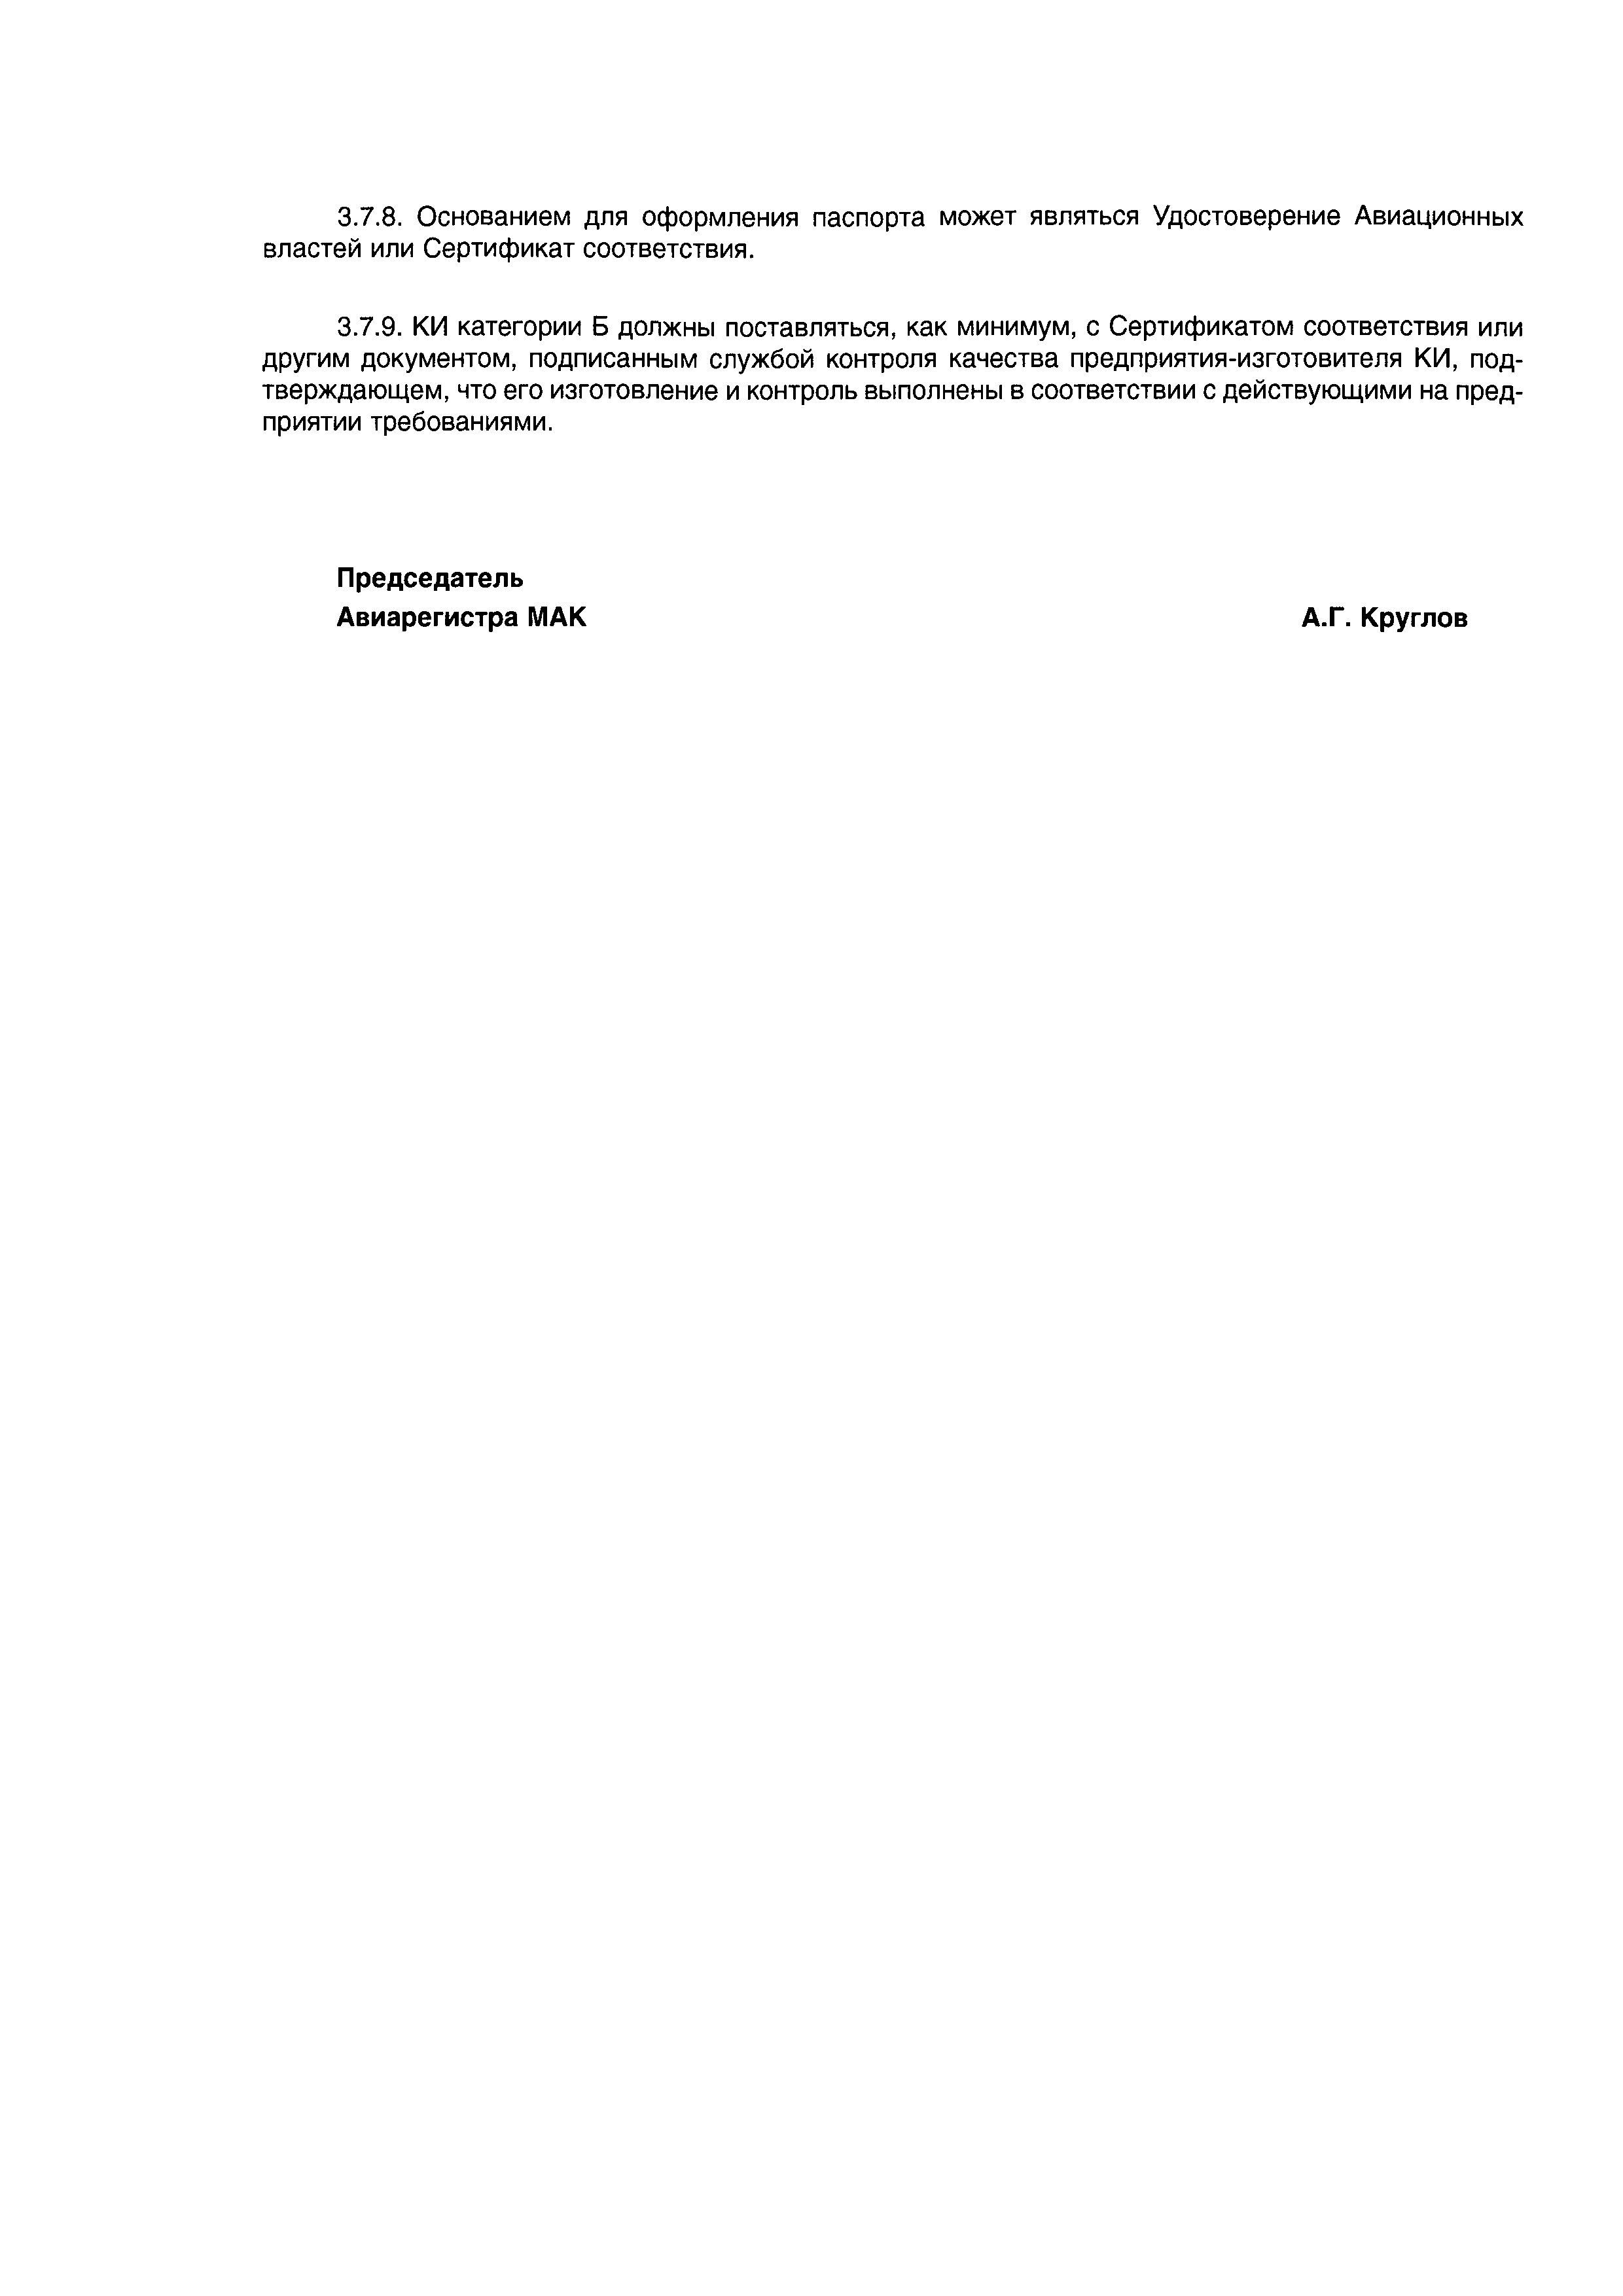 Директивное письмо 04-2004